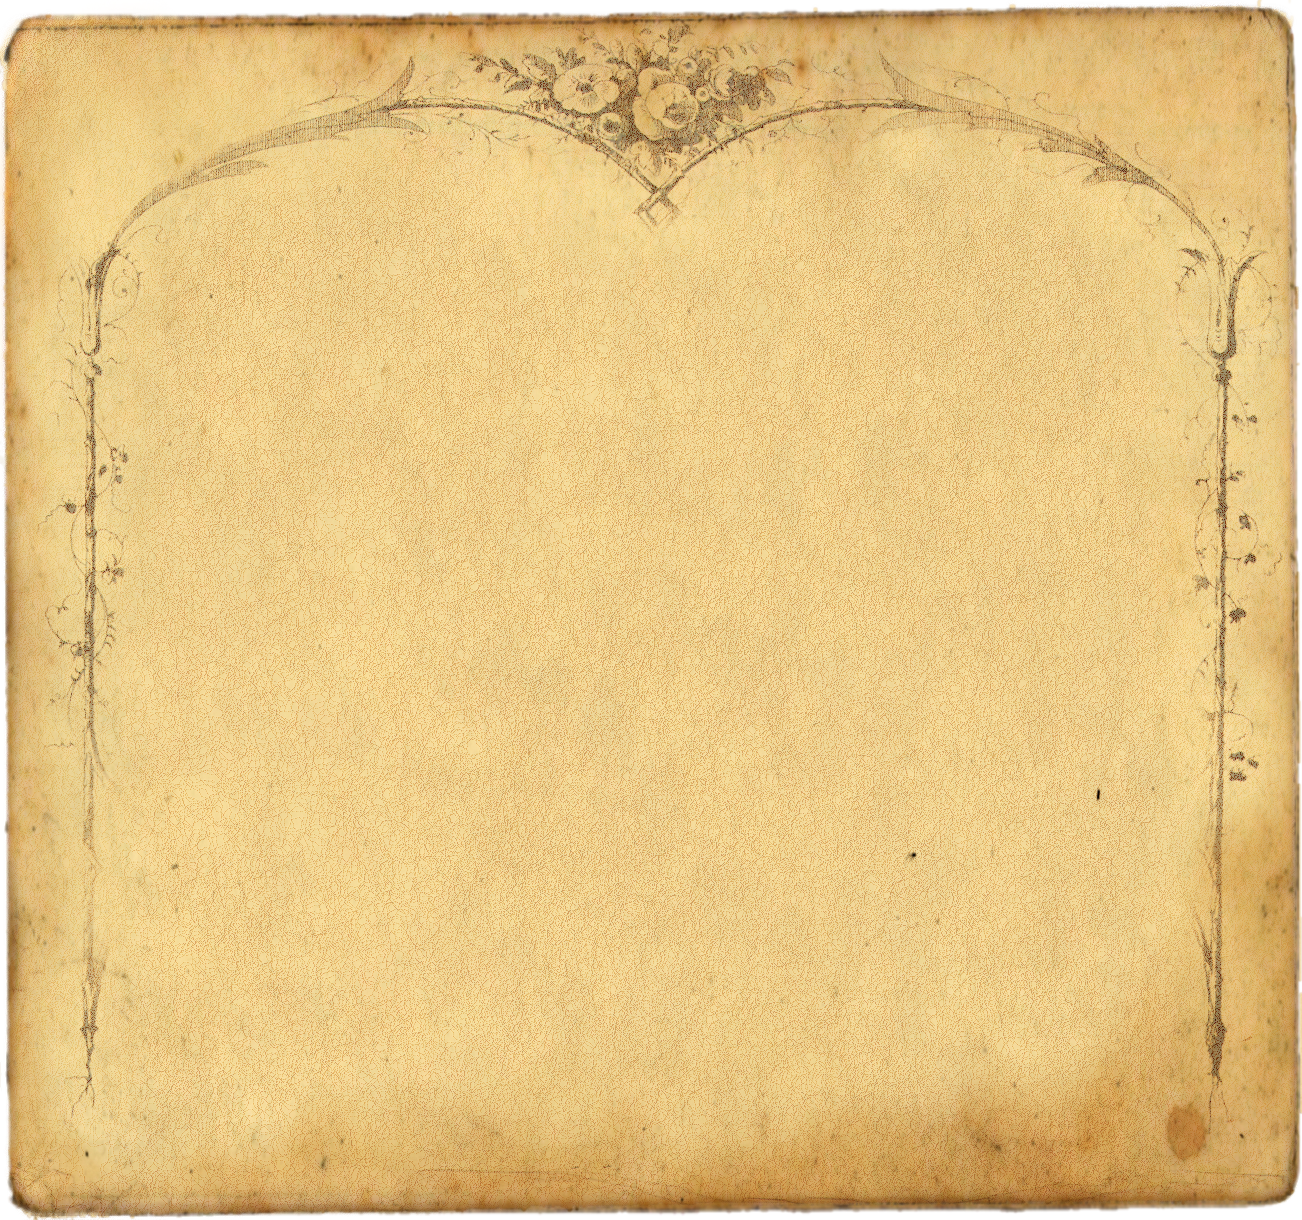 Бумага 18 век. Старинная бумага фон. Фон под старину. Старый лист бумаги. Фон в винтажном стиле.